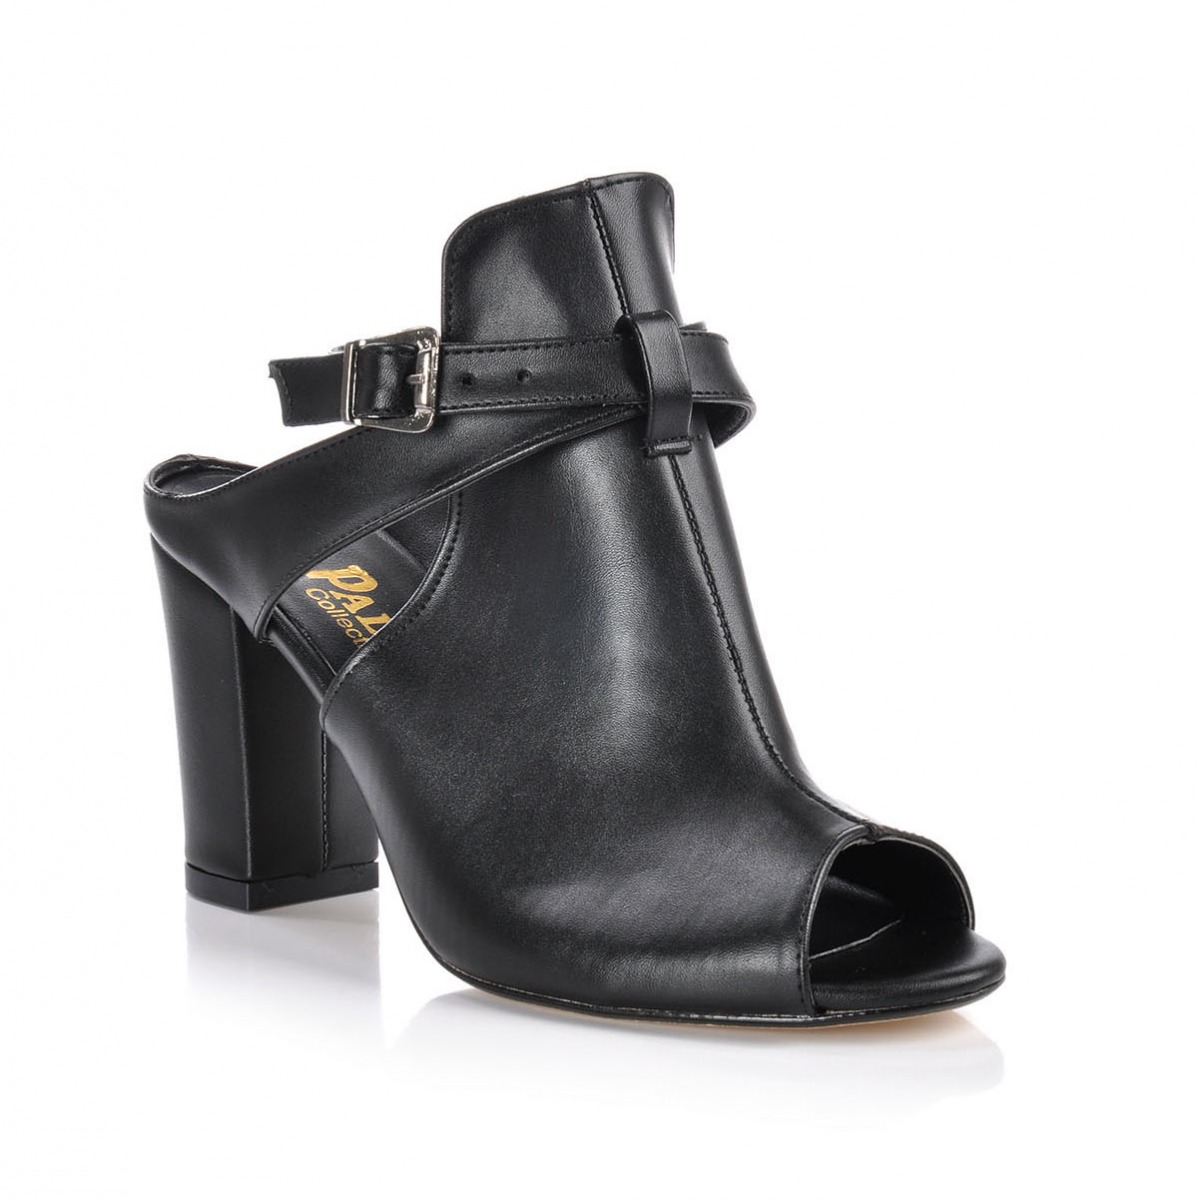 Flo Kadın  Siyah Klasik Topuklu Ayakkabı VZN-231Y. 2